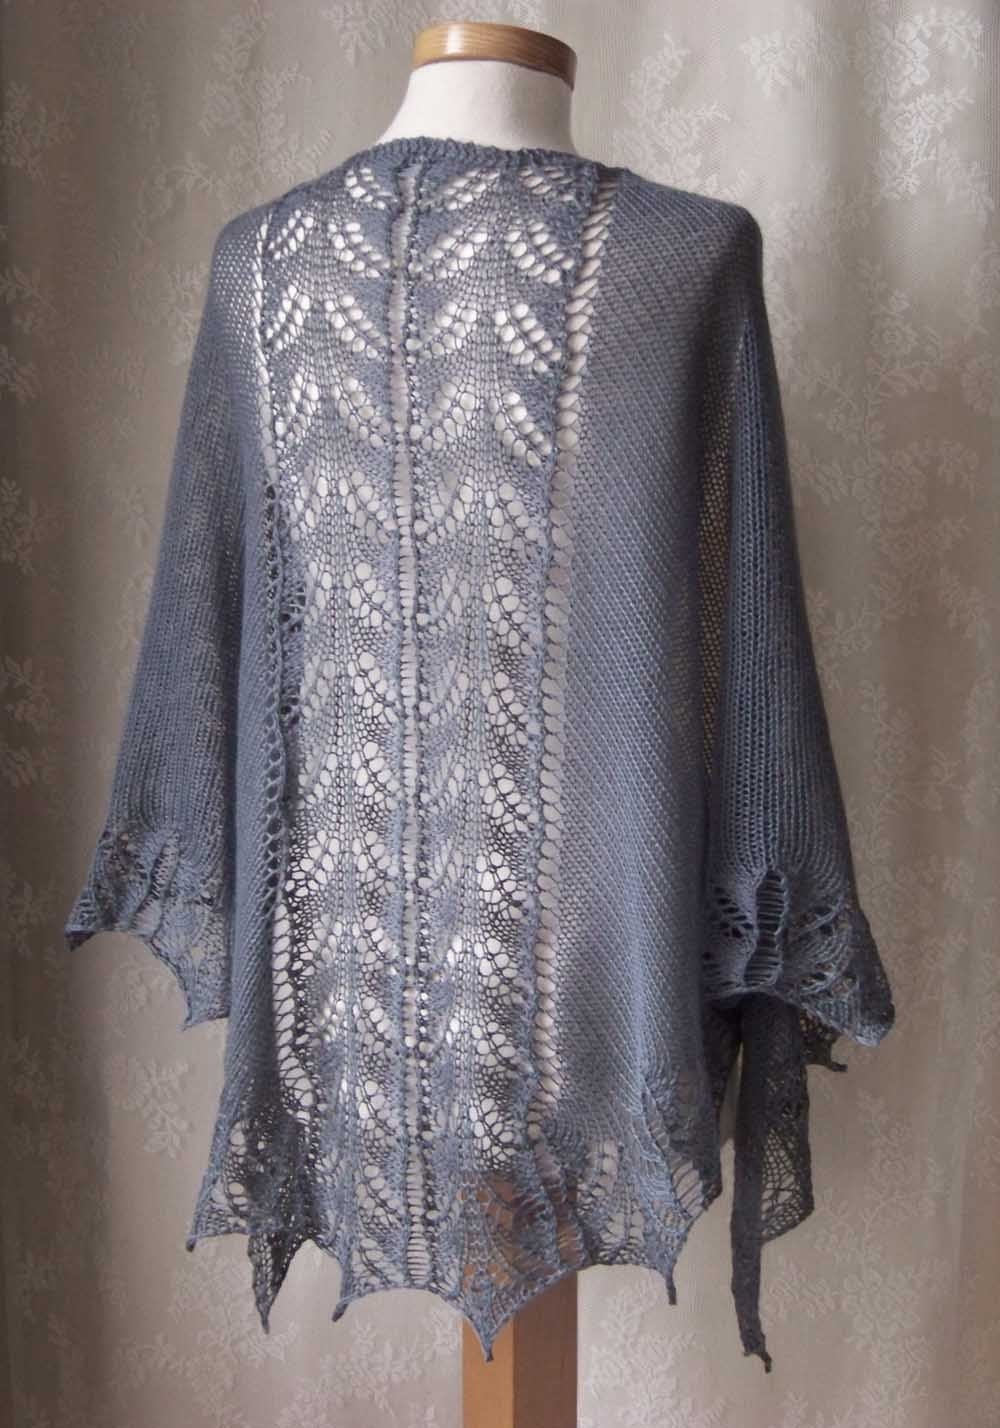 Knit Lace Shawl Knitting Pattern | Red Heart